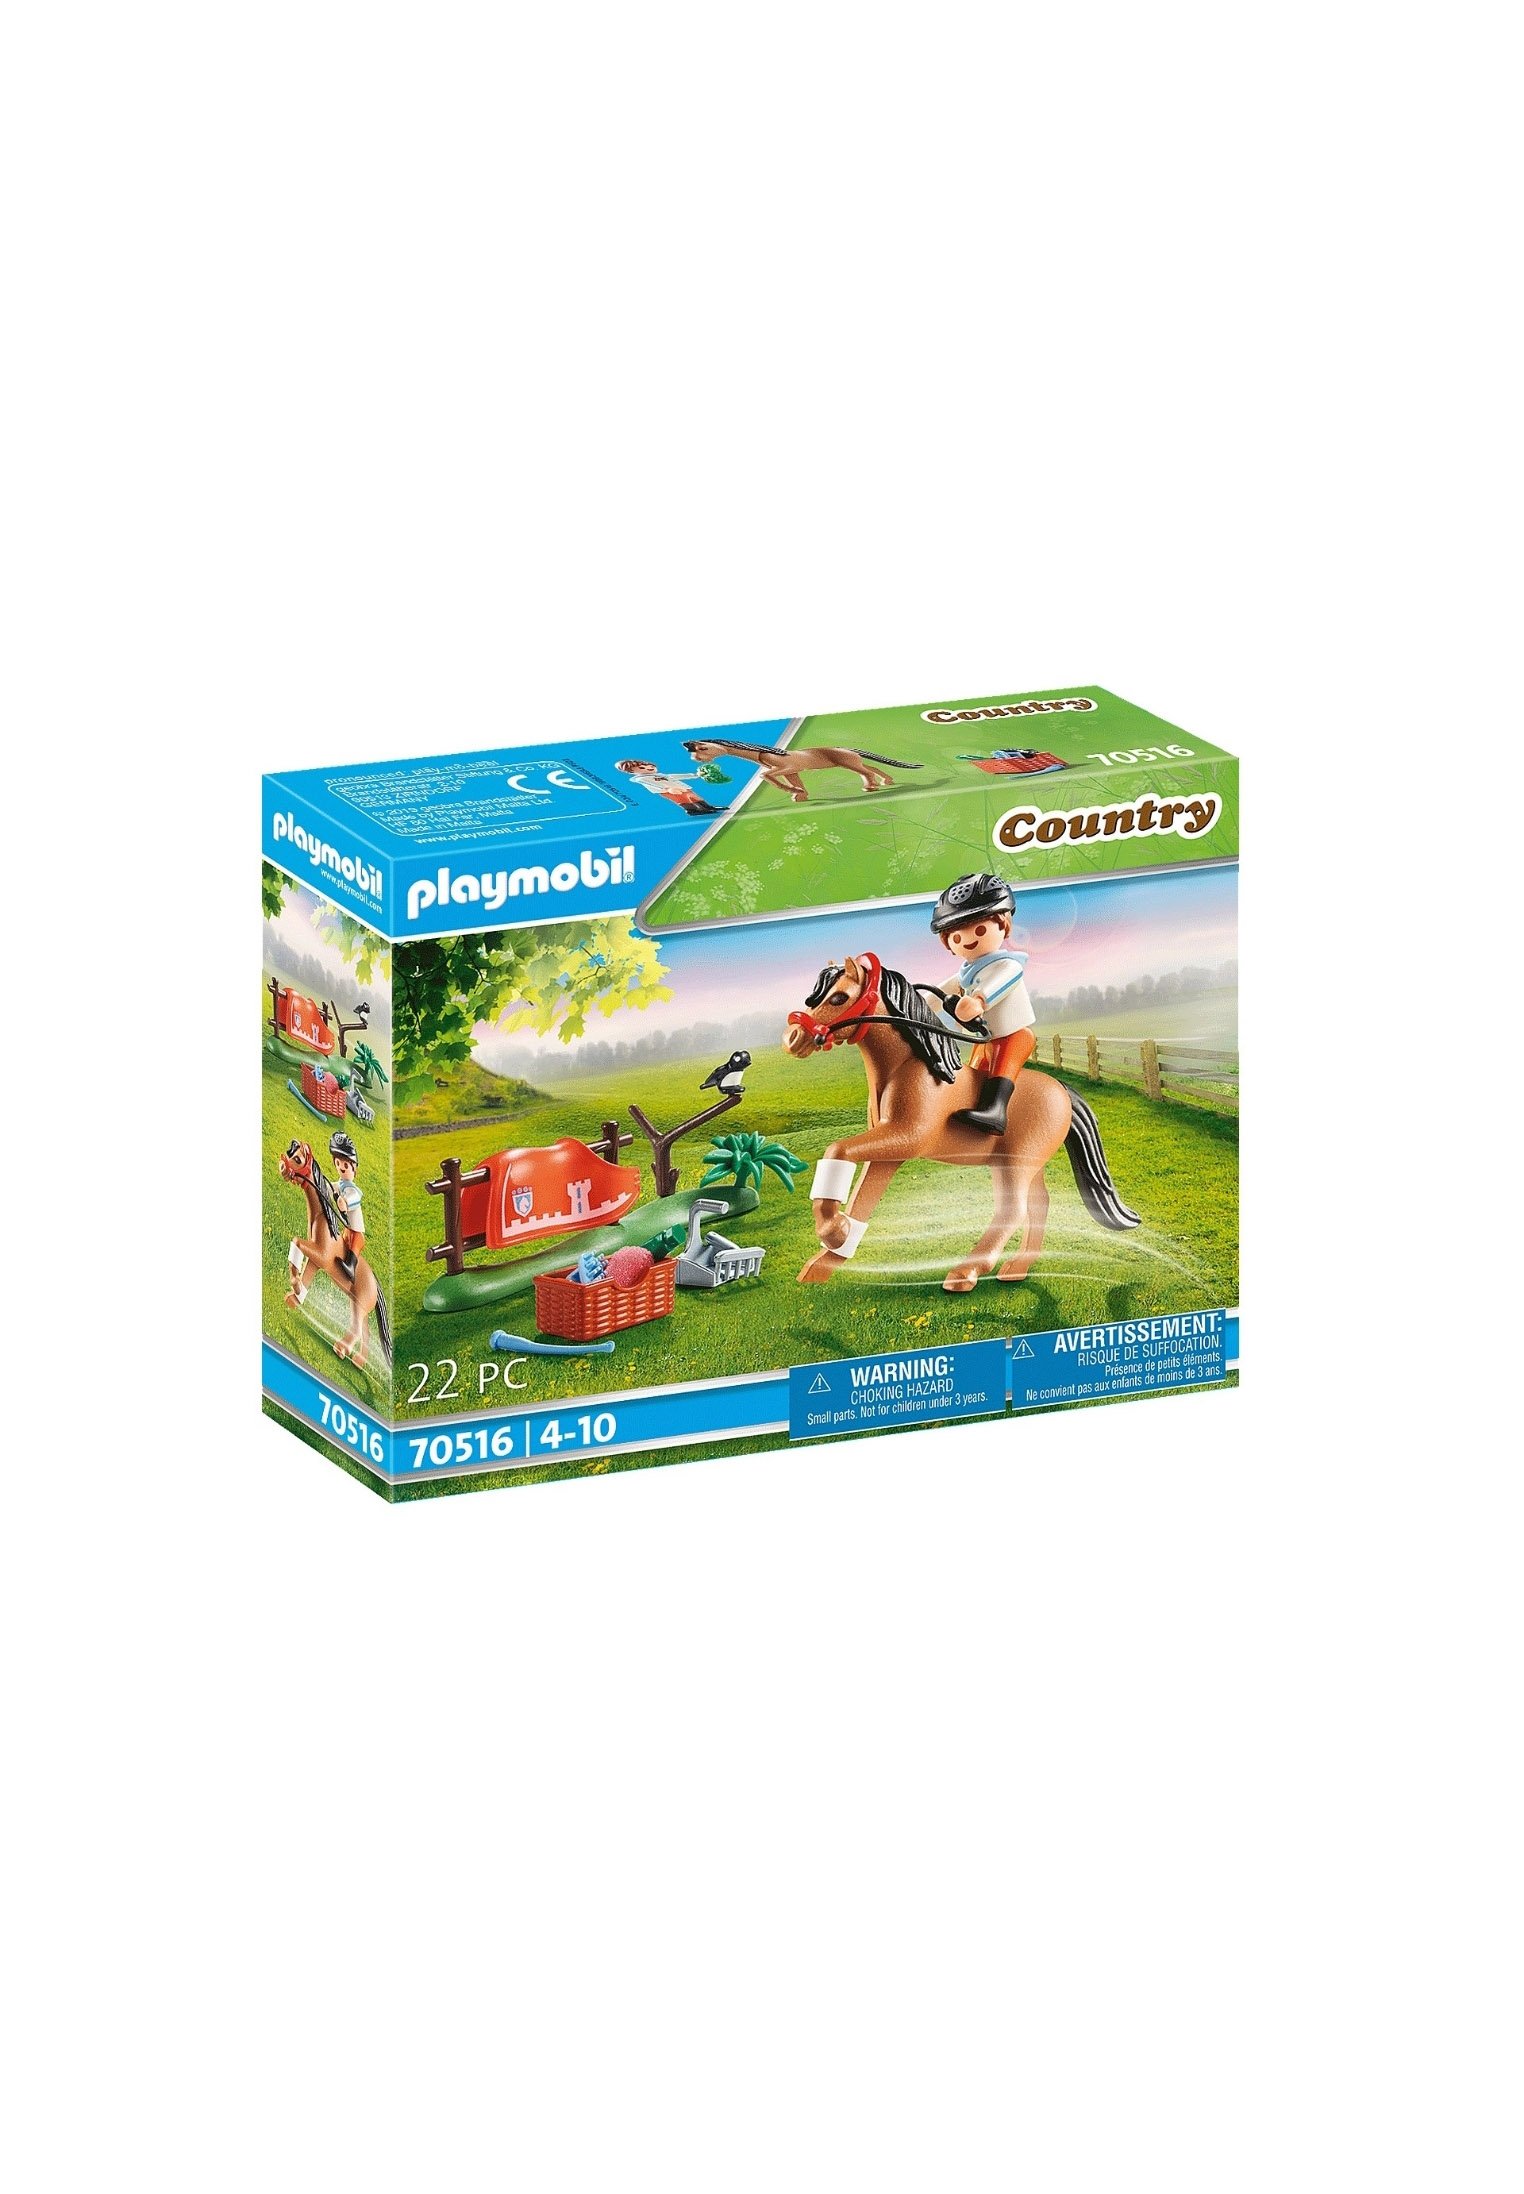 Playmobil COUNTRY - Mini-Spielzeug - braun